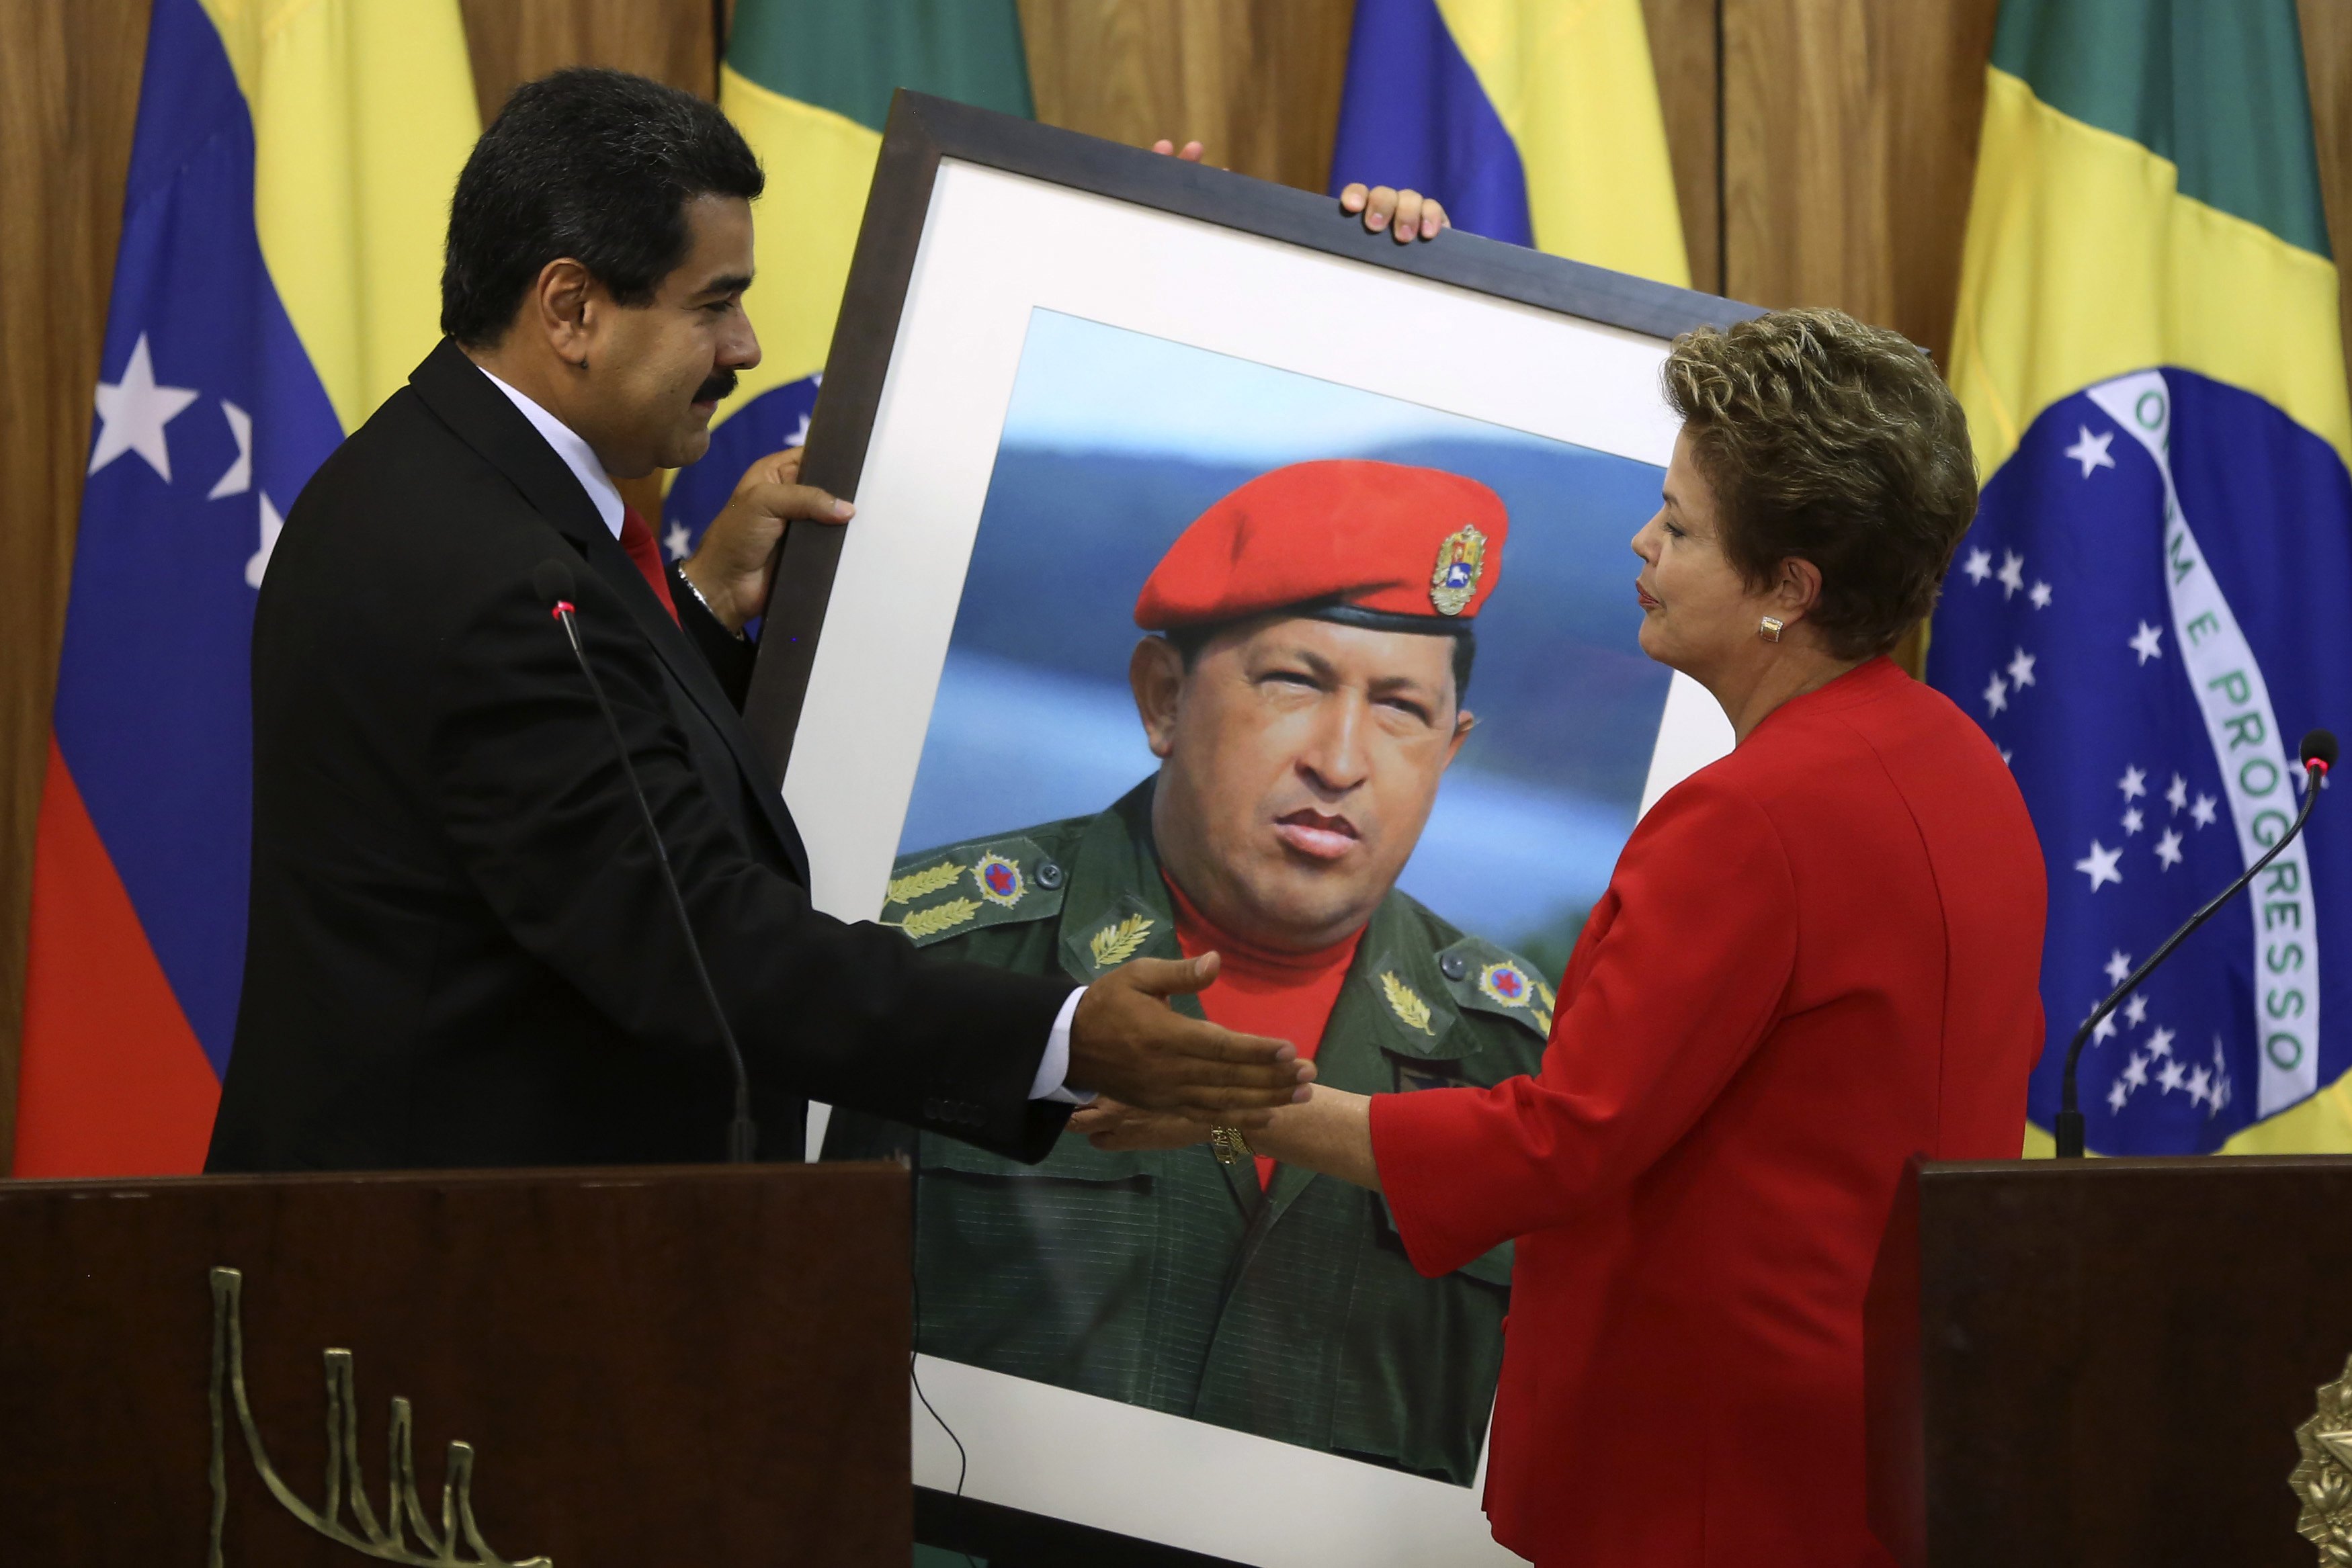 Maduro califica de “Golpe Mediático-Judicial” acciones constitucionales en Brasil